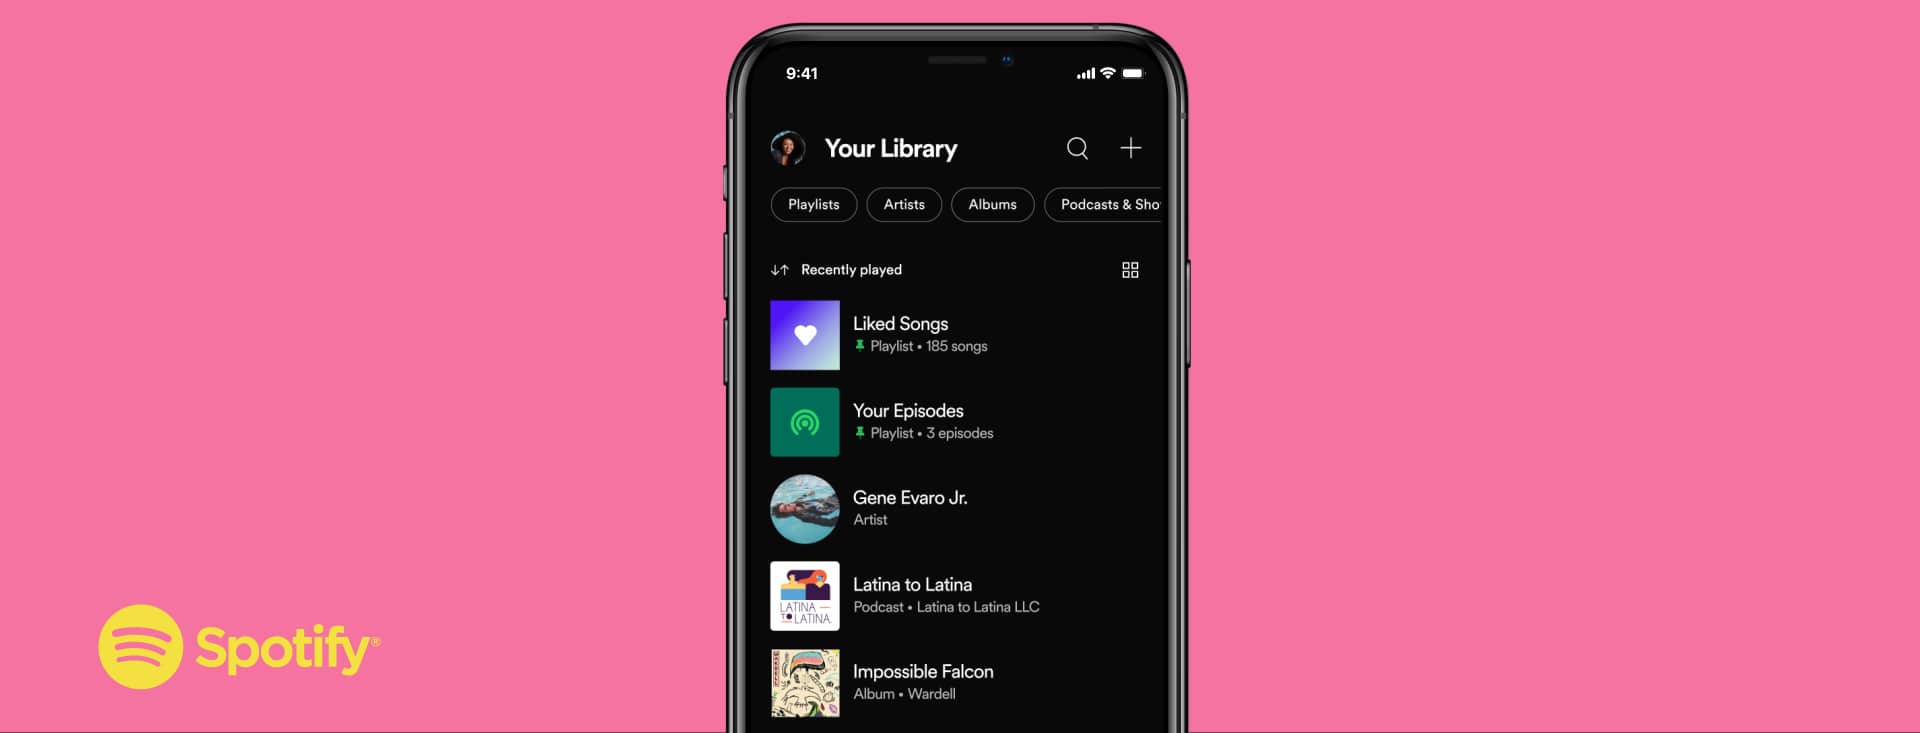 Novidades na tela Sua Biblioteca, do Spotify